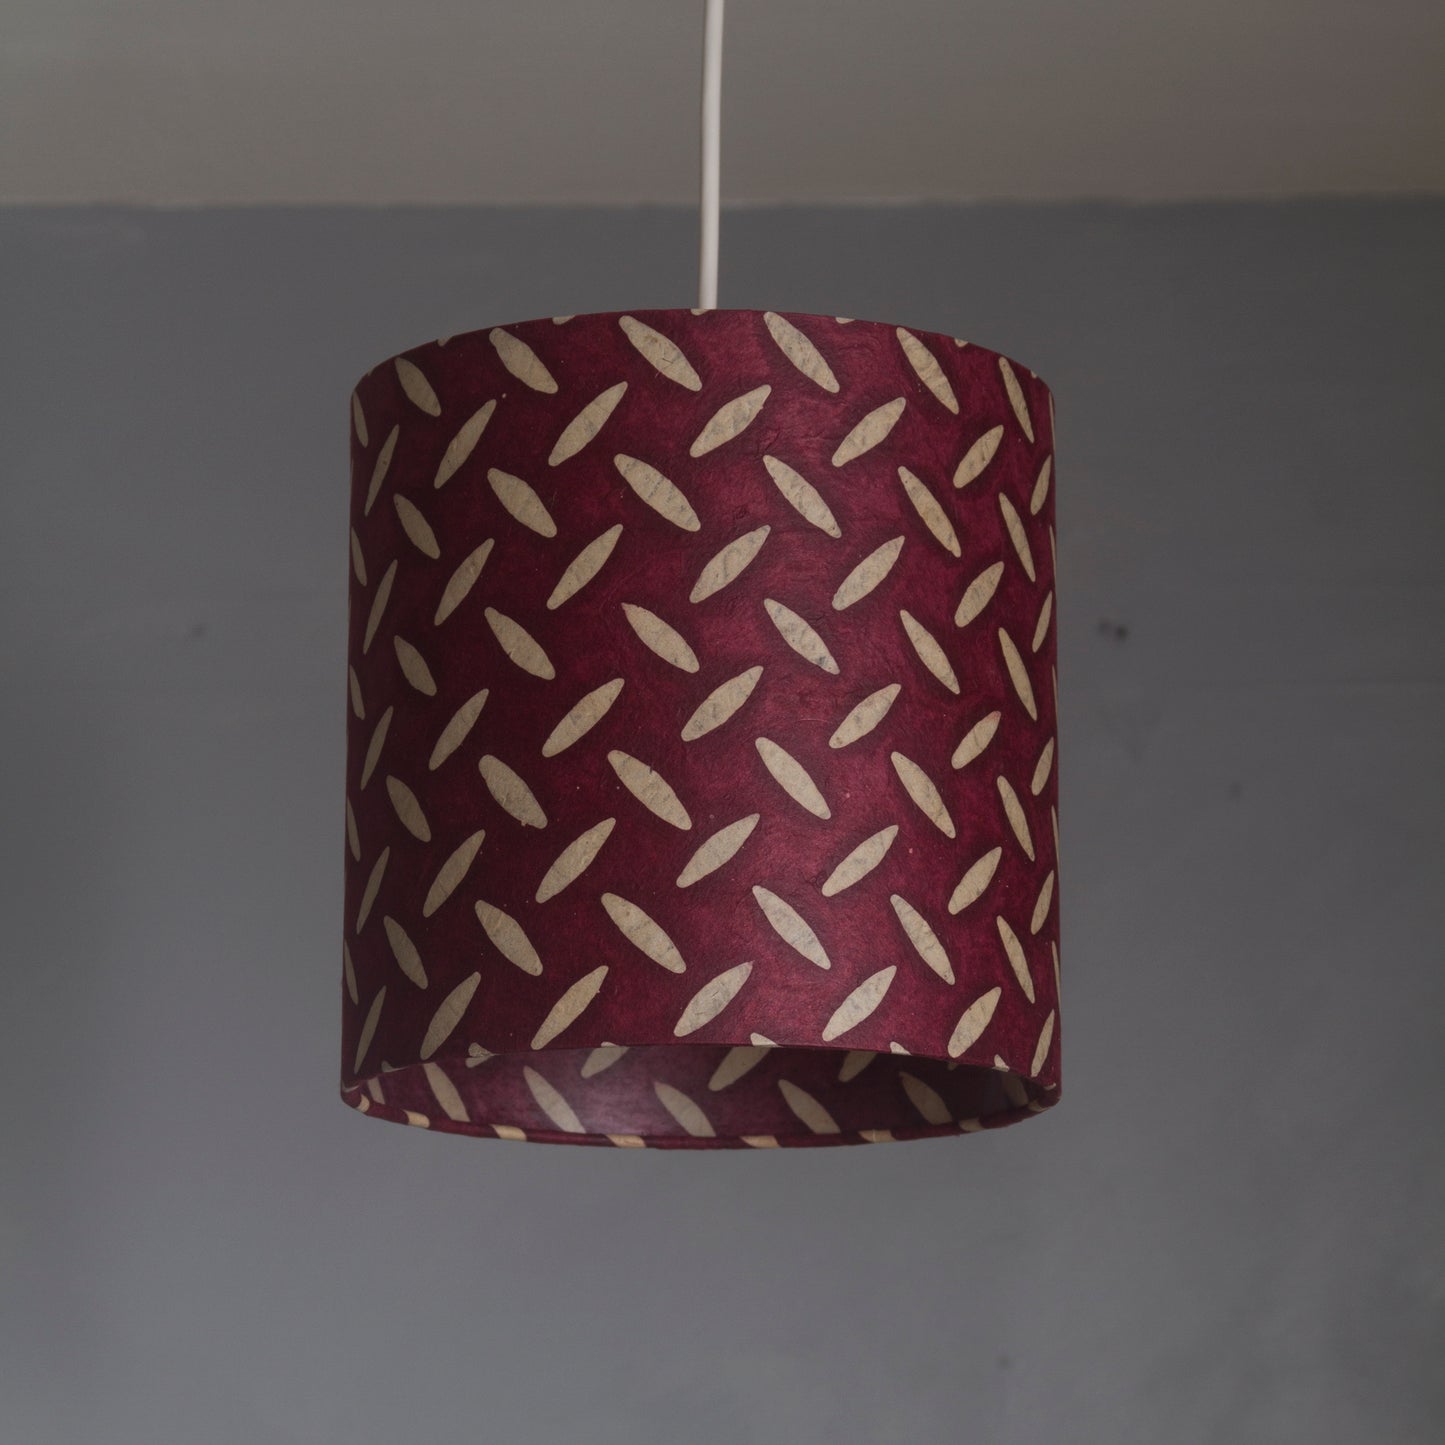 Oval Lamp Shade - P14 - Batik Tread Plate Cranberry, 20cm(w) x 30cm(h) x 13cm(d)